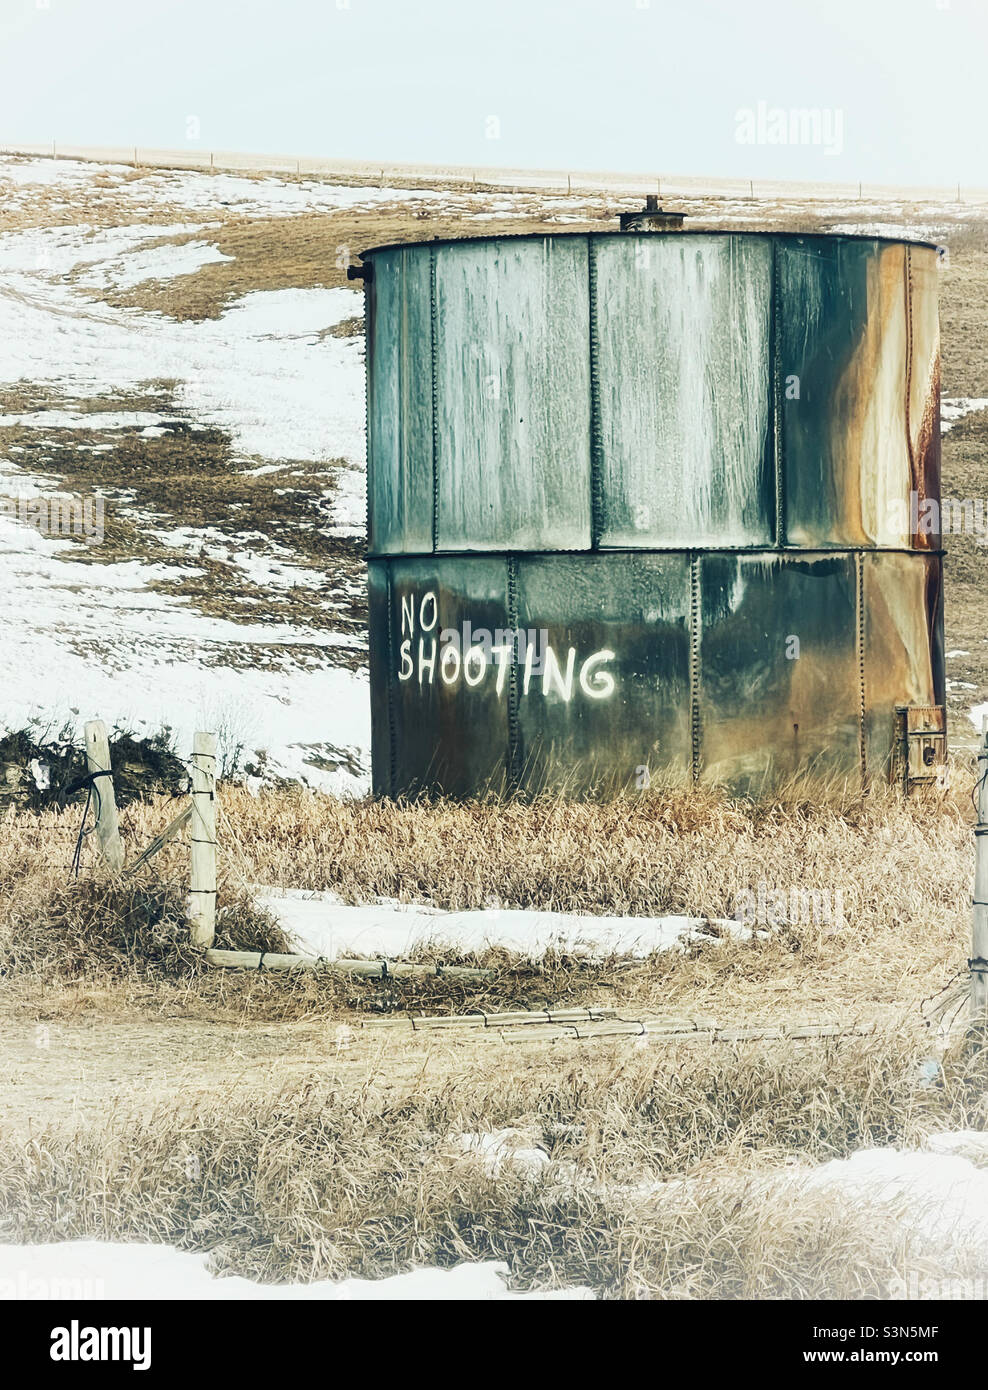 Große Lagertrommel mit „No Shooting“ auf der Außenseite lackiert. Gedreht in den Ausläufern, in der Nähe von Calgary, Alberta, Kanada. Stockfoto